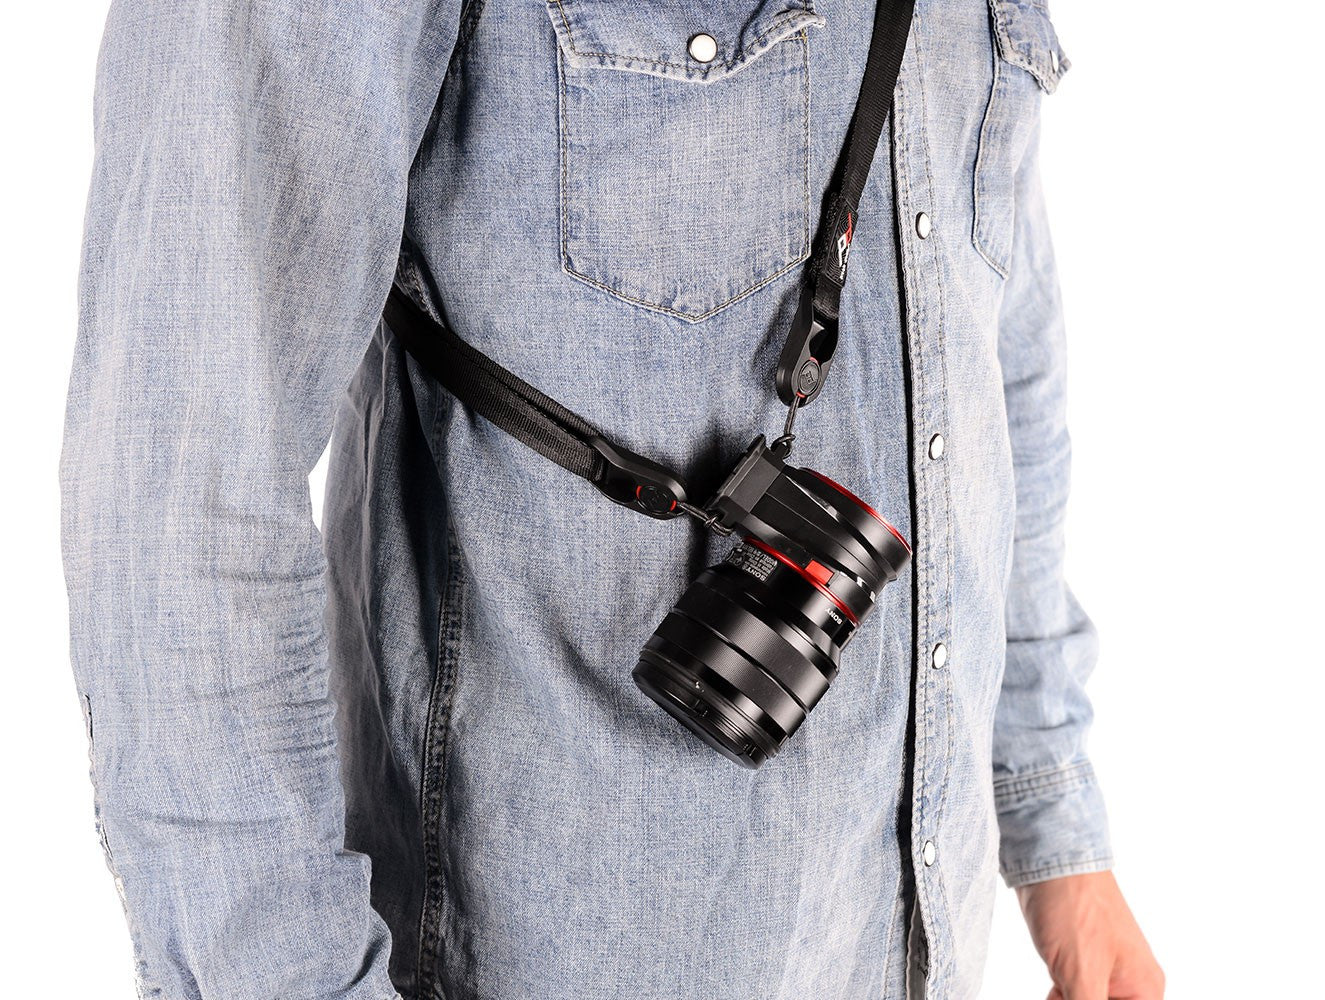 Peak Design Capture Lens Clip for Nikon Lenses, bags accessories, Peak Design - Pictureline  - 5